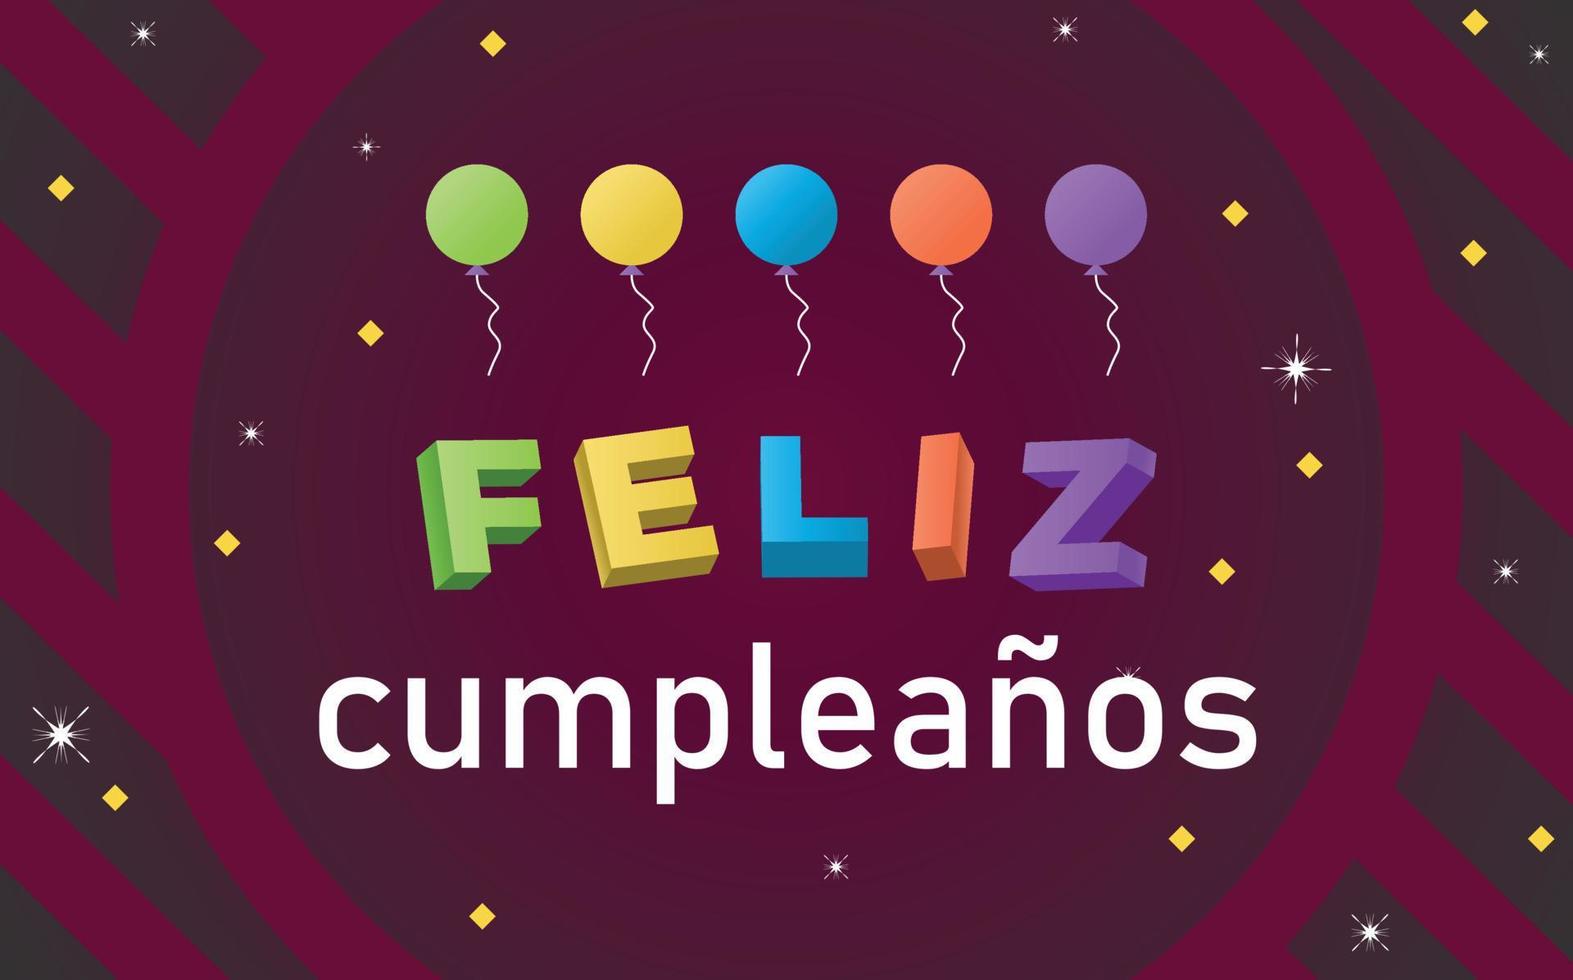 joyeux anniversaire en espagnol, illustration feliz cumpleanos avec texte coloré, ballons pour modèles de cartes de voeux ou d'invitation. vecteur